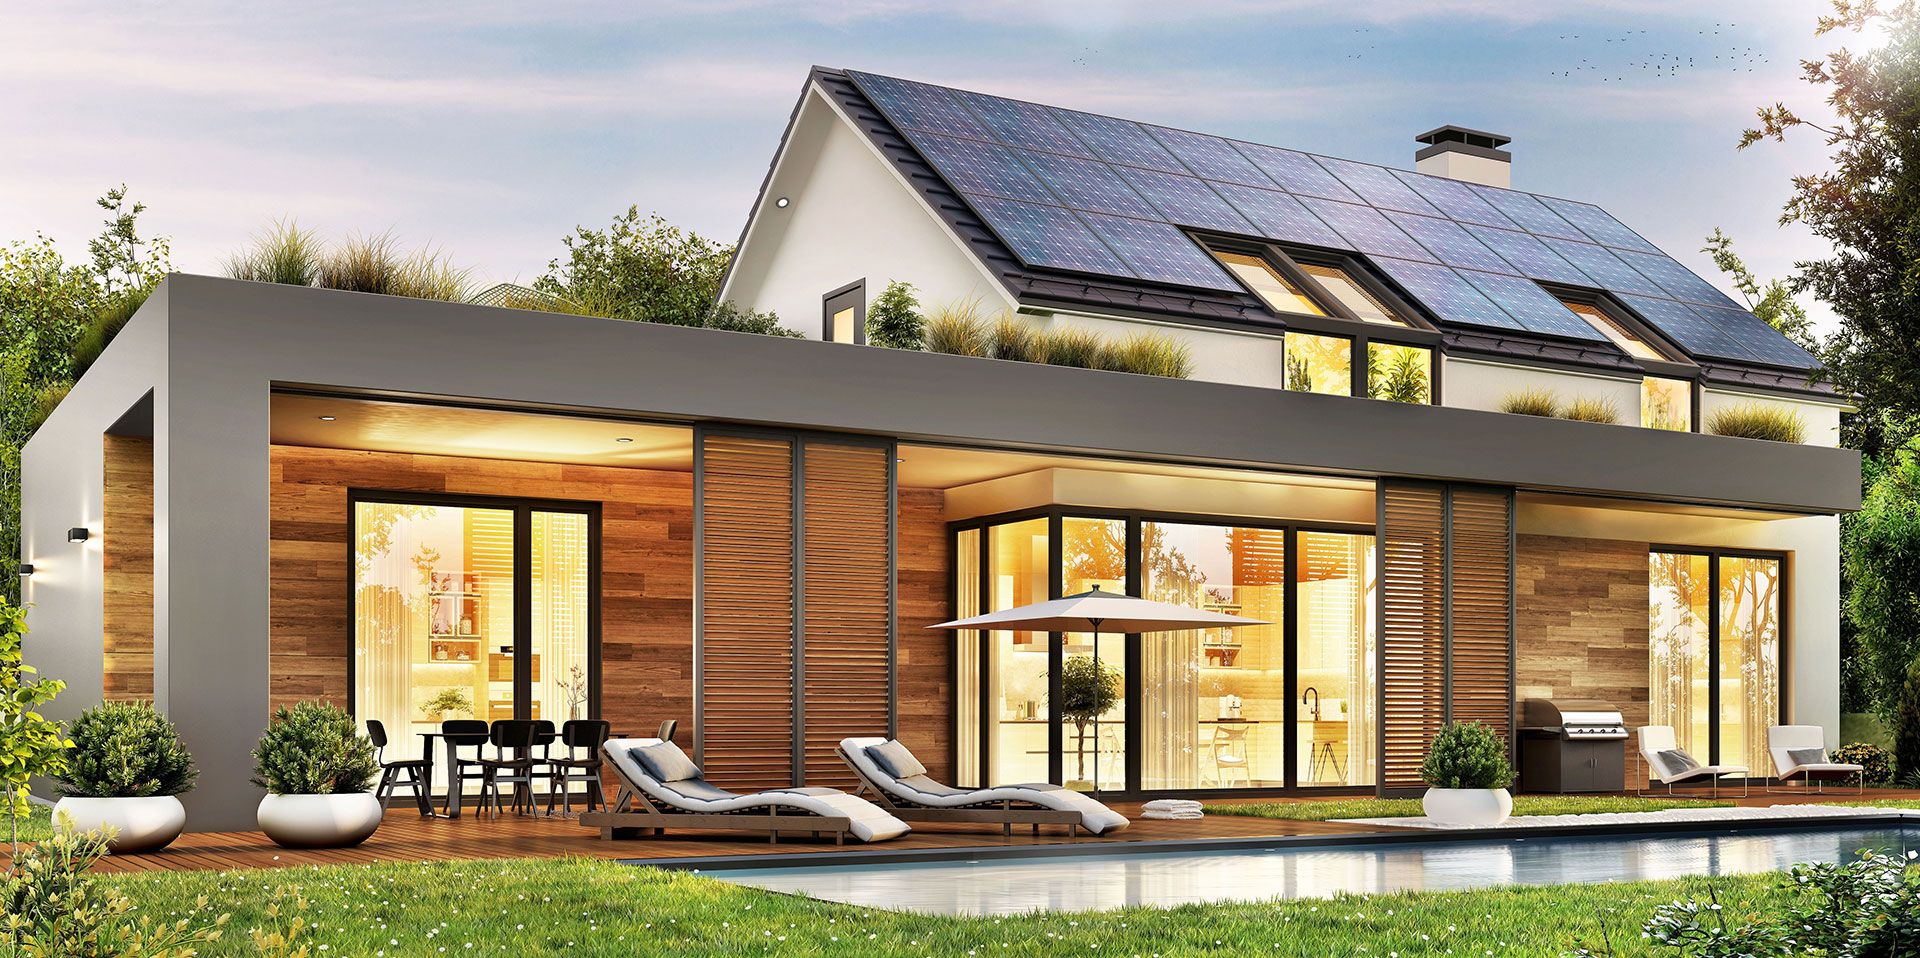 Vom Garten ausgehende Ansicht eines Hauses mit Solarmodulen auf dem Dach und einem Vorbau mit flachem Dach, innen beleuchtet, mit Pool und gemütlichen Liegen auf der Terrasse